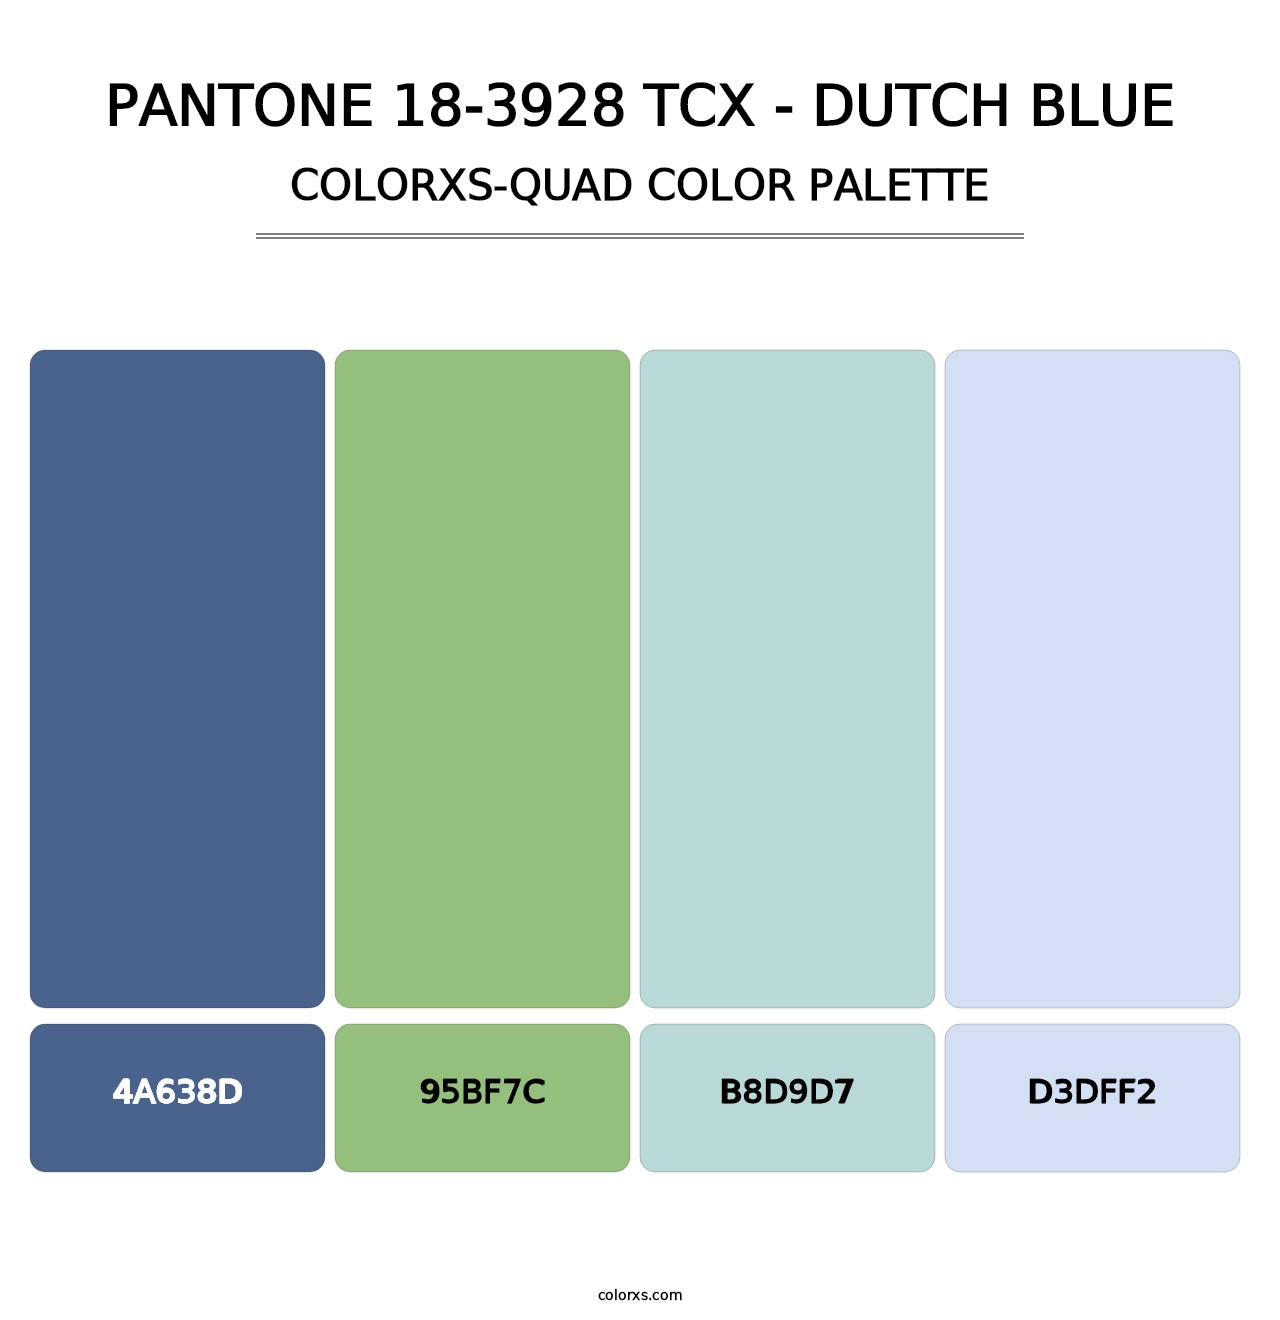 PANTONE 18-3928 TCX - Dutch Blue - Colorxs Quad Palette